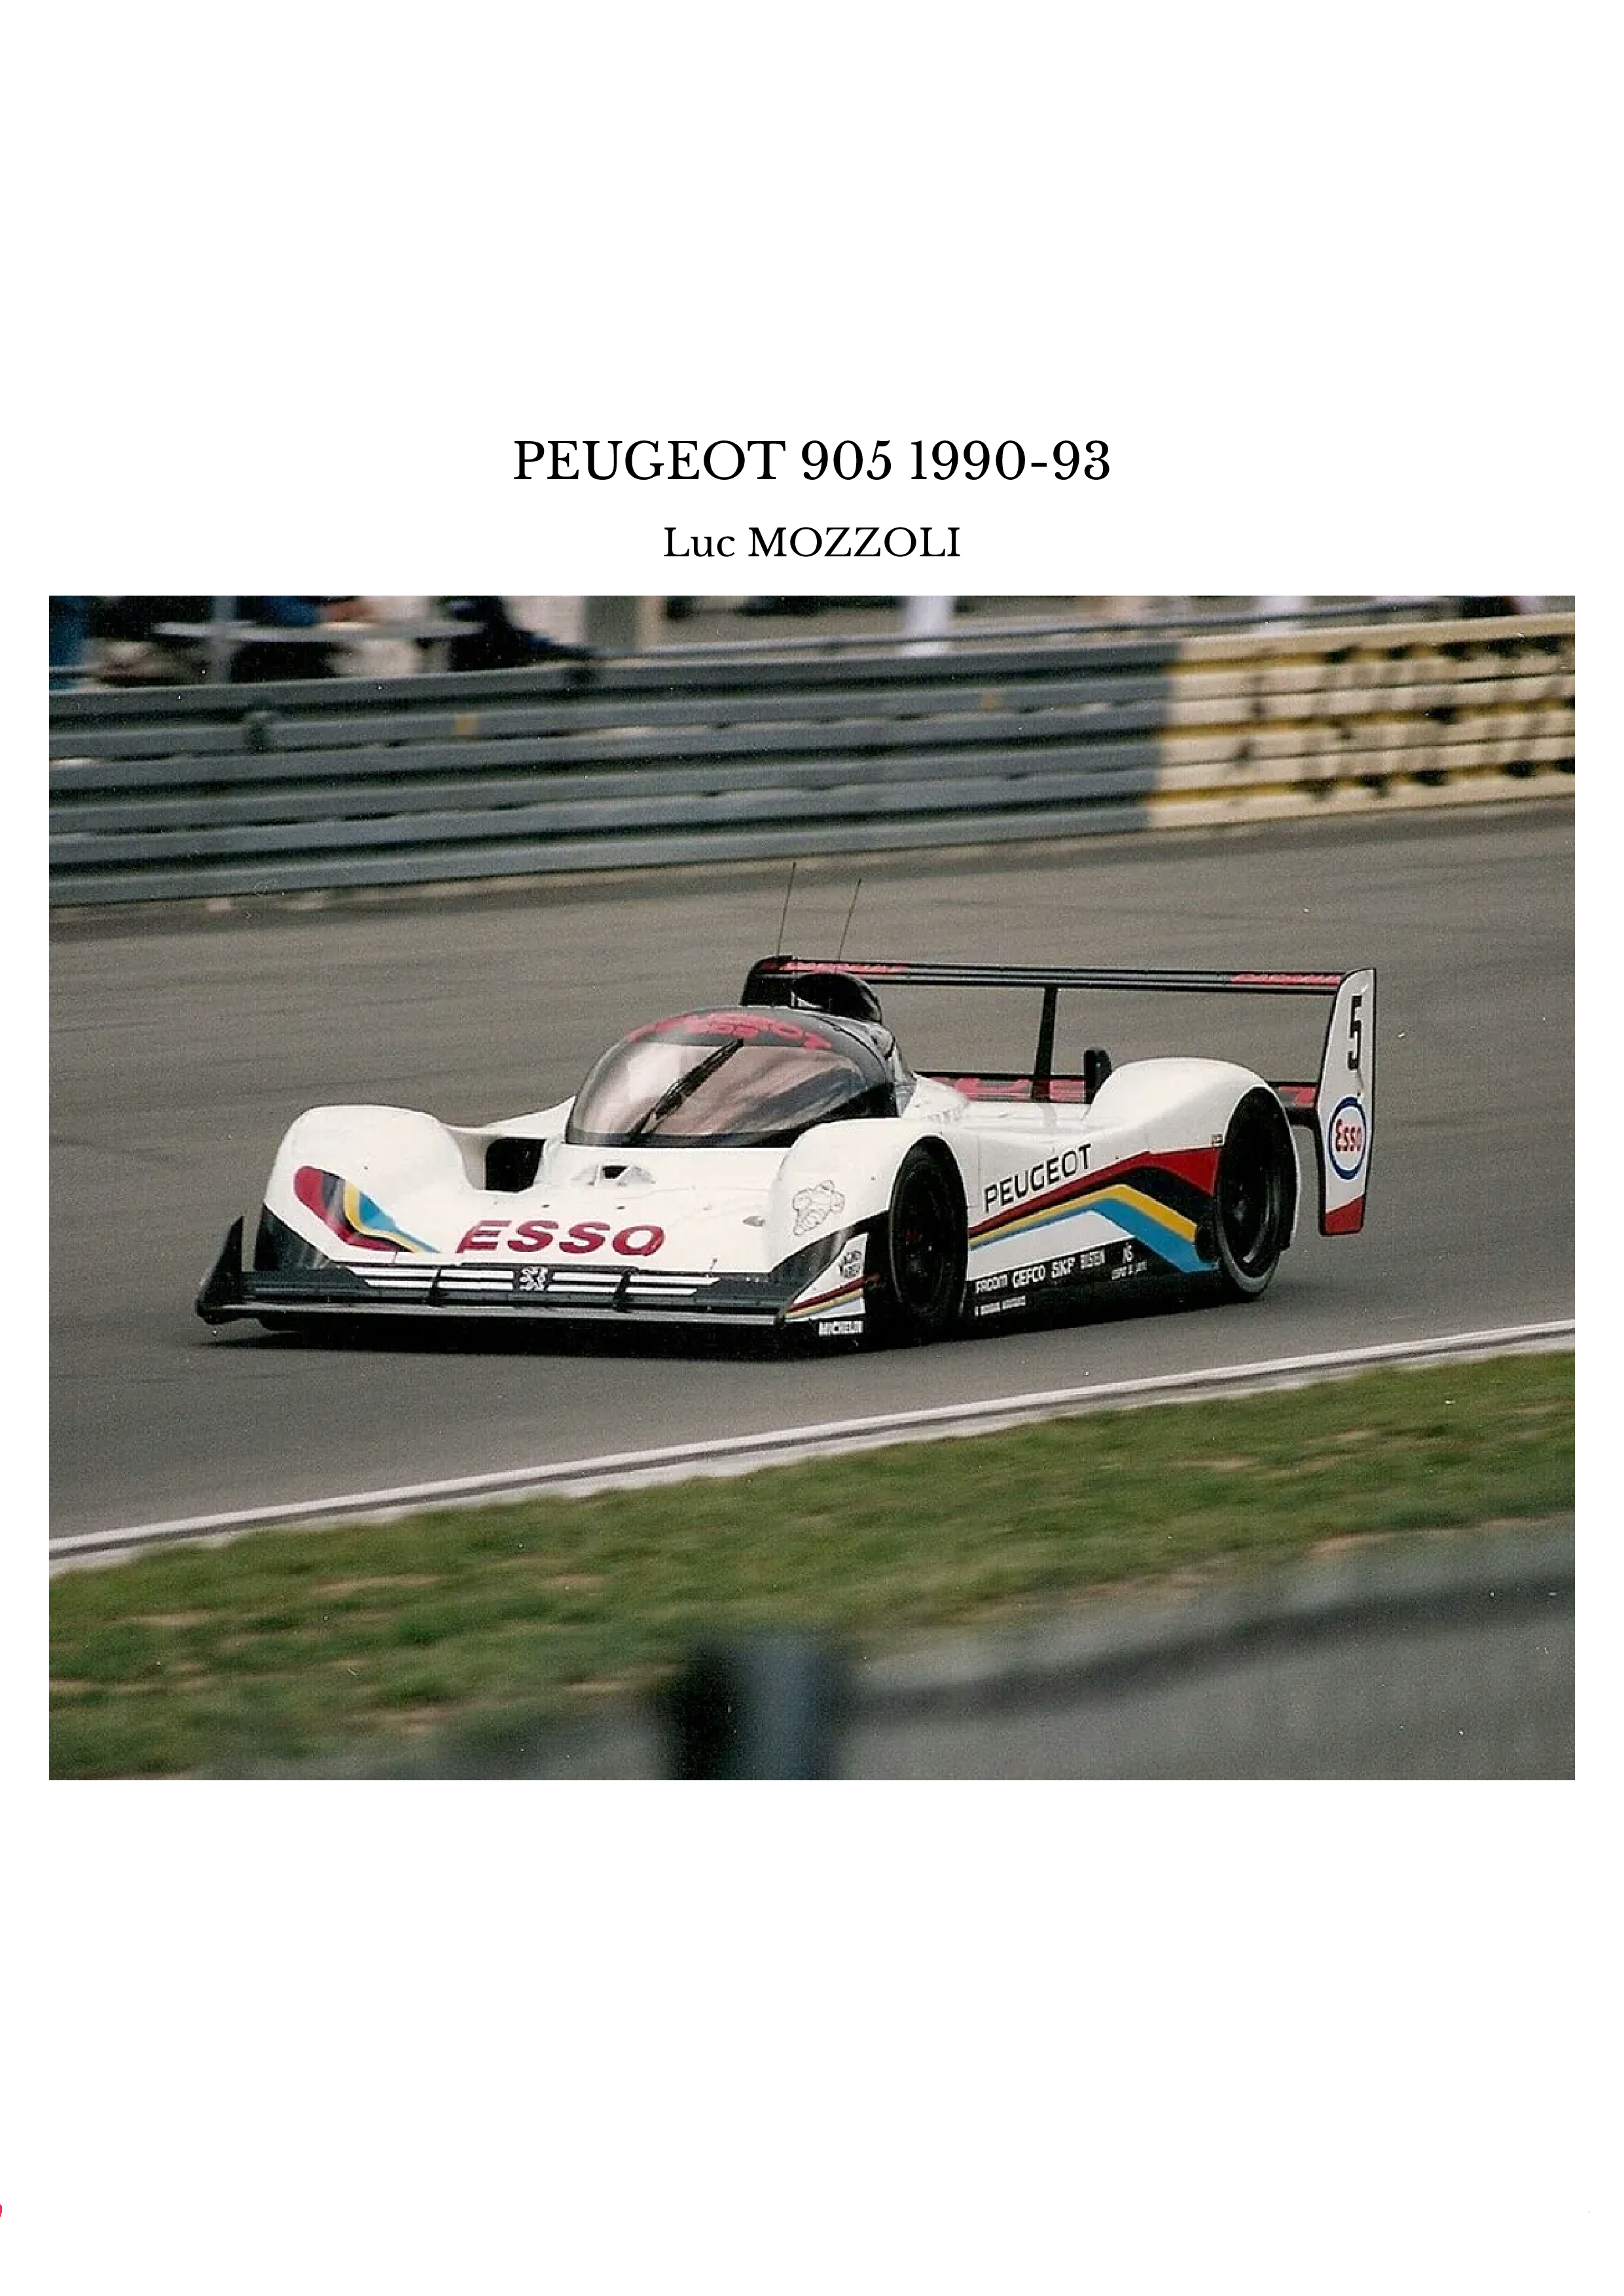 PEUGEOT 905 1990-93